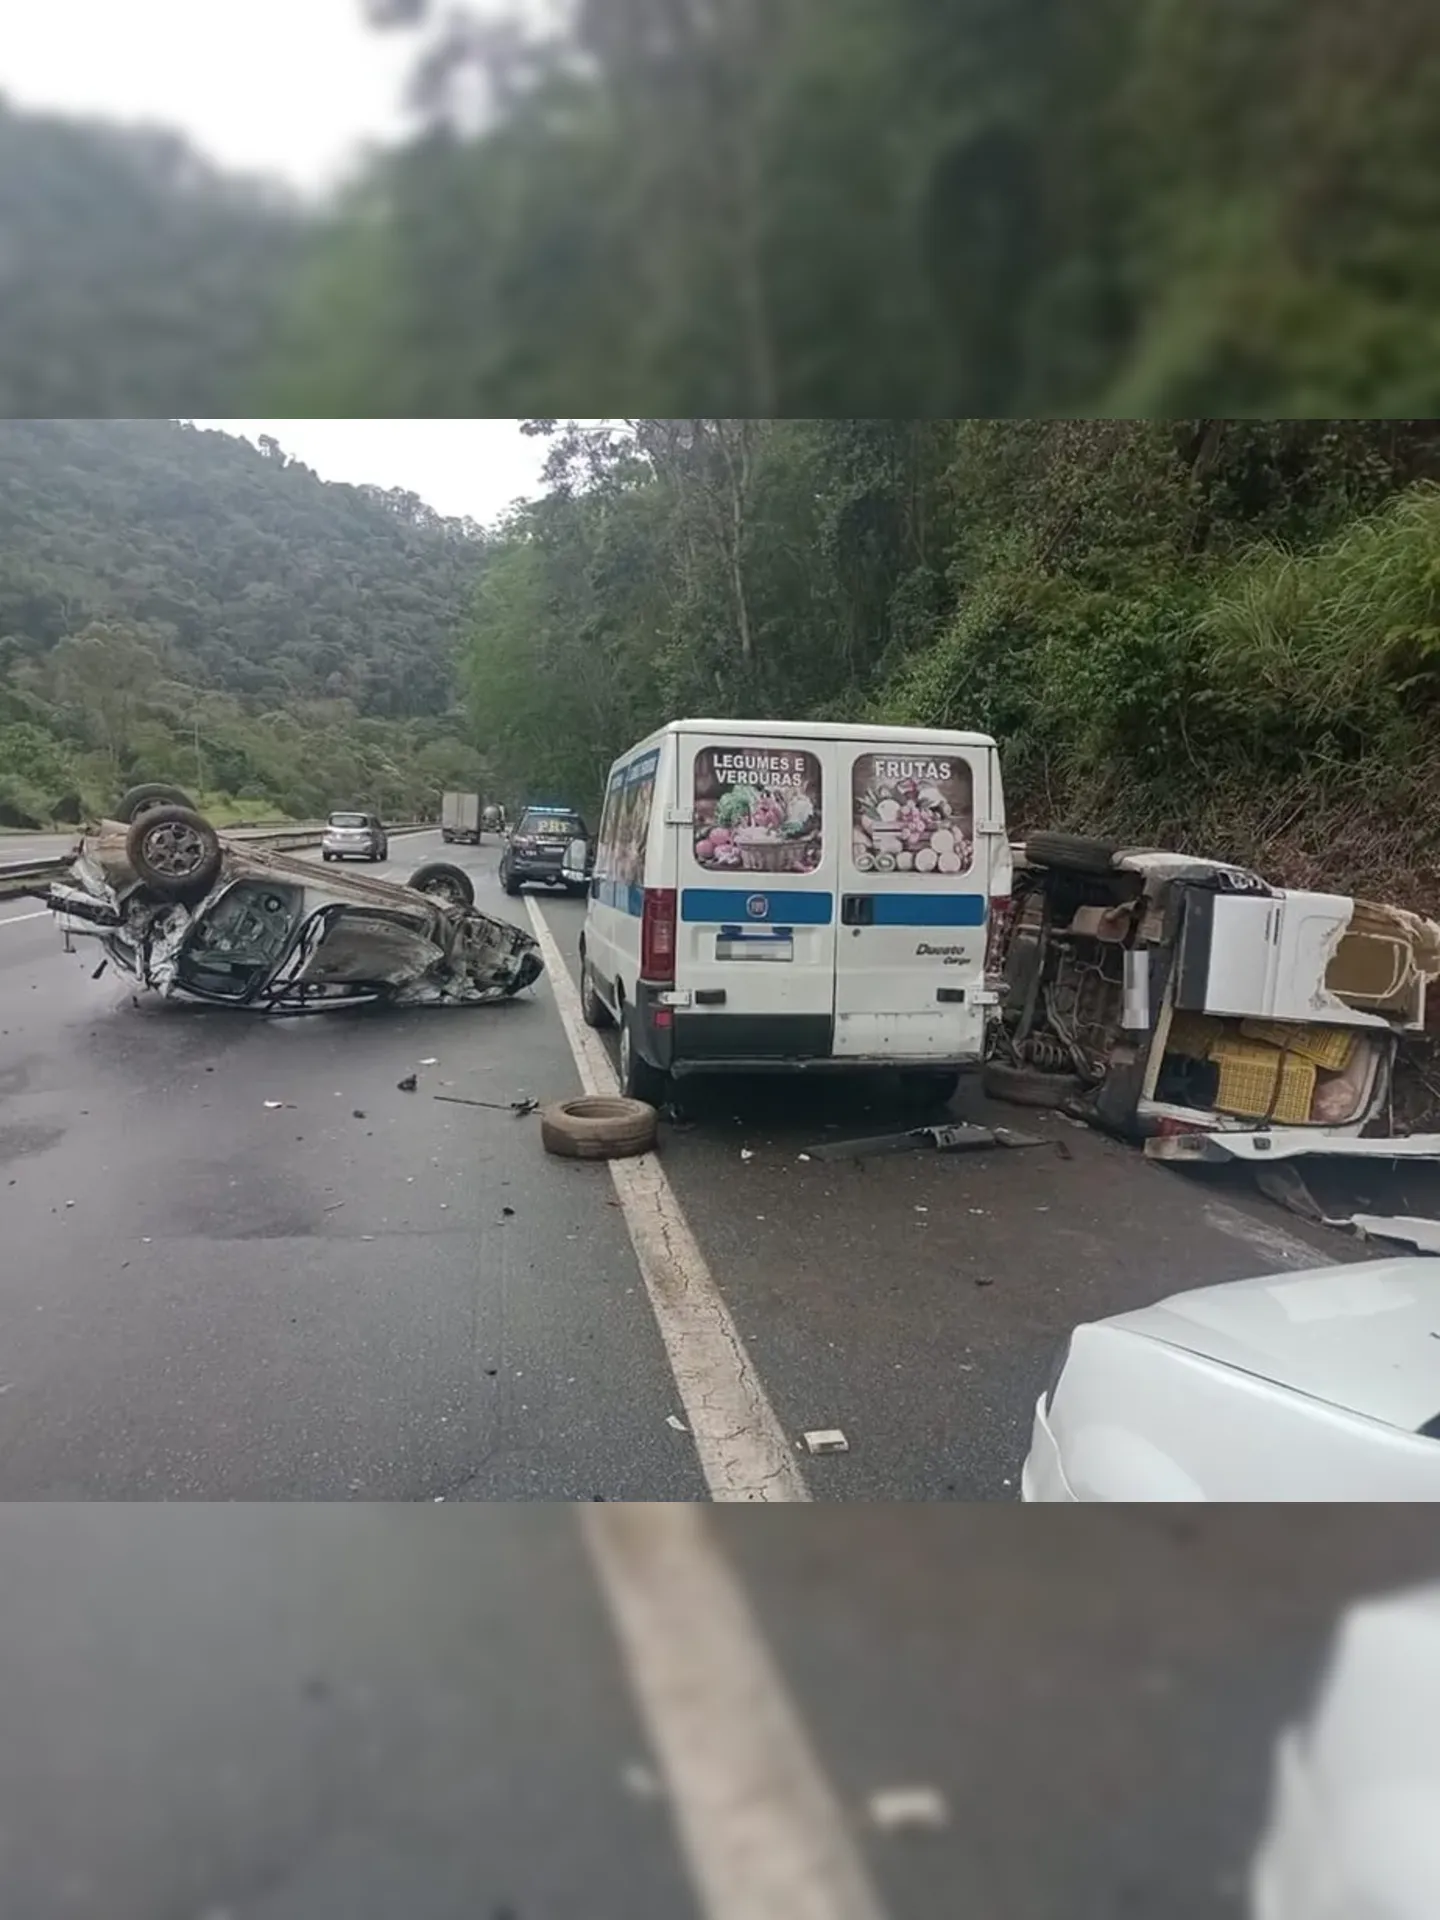 Acidente aconteceu na BR-040, altura de Araras, distrito de Petrópolis